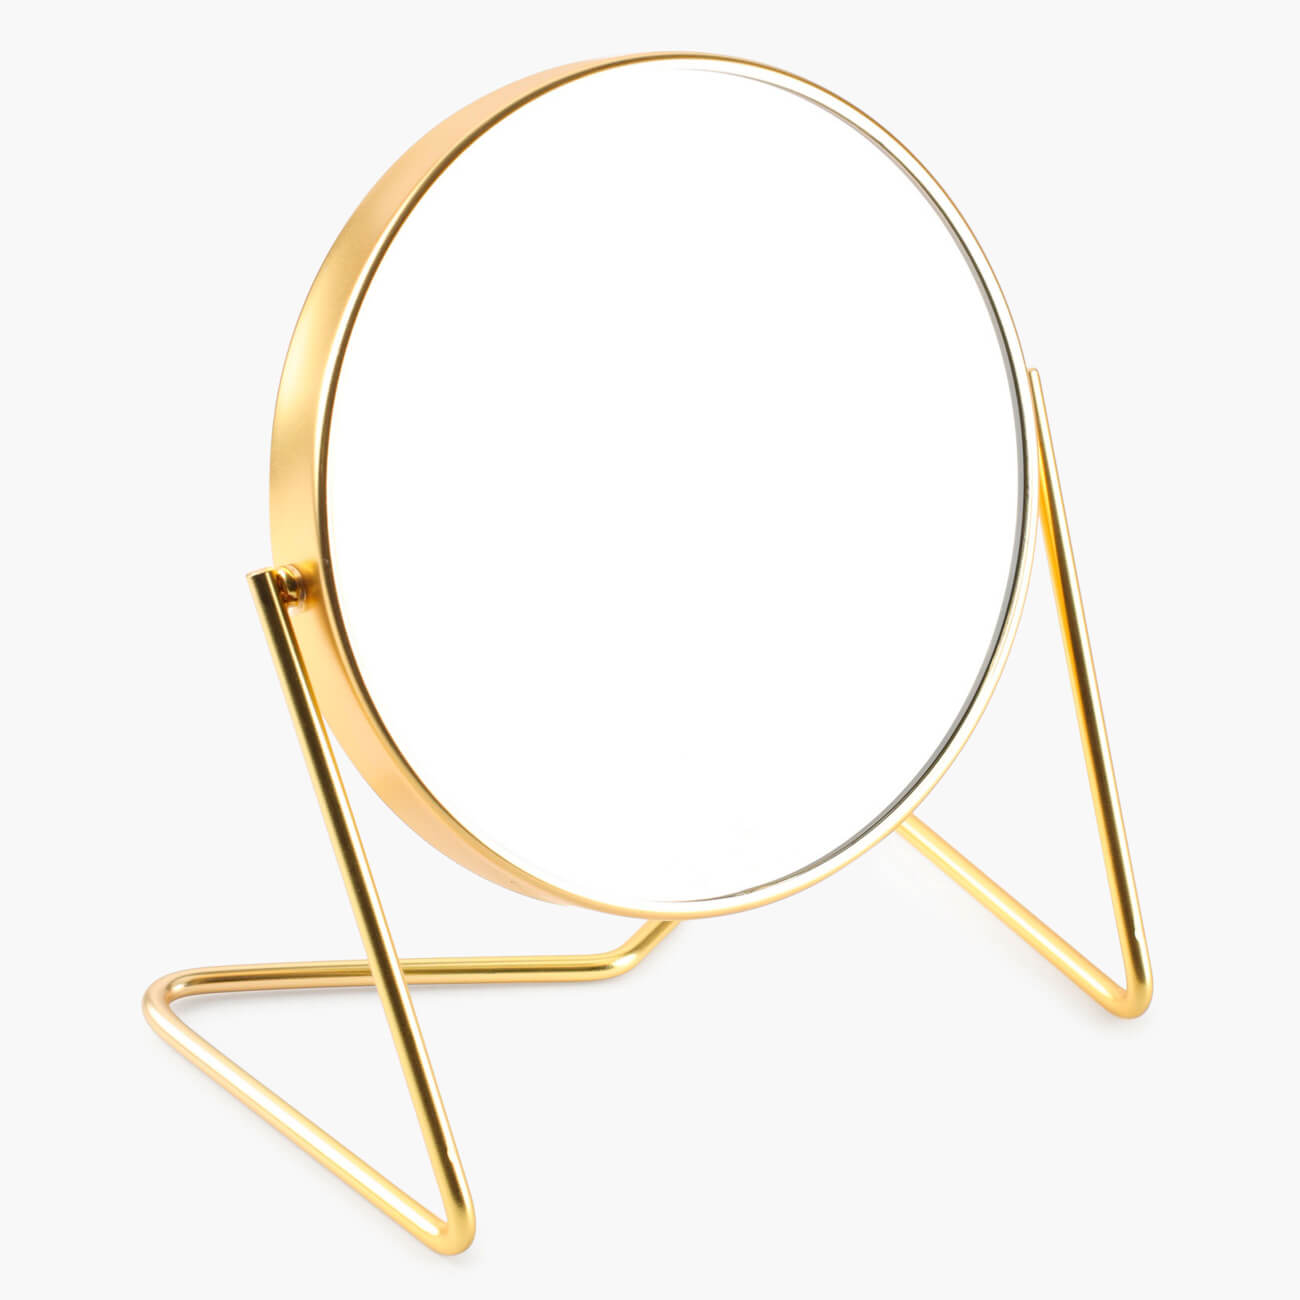 Зеркало настольное, 18 см, двустороннее, металл, круглое, золотистое, Trend зеркало настольное 18 см двустороннее металл круглое золотистое trend